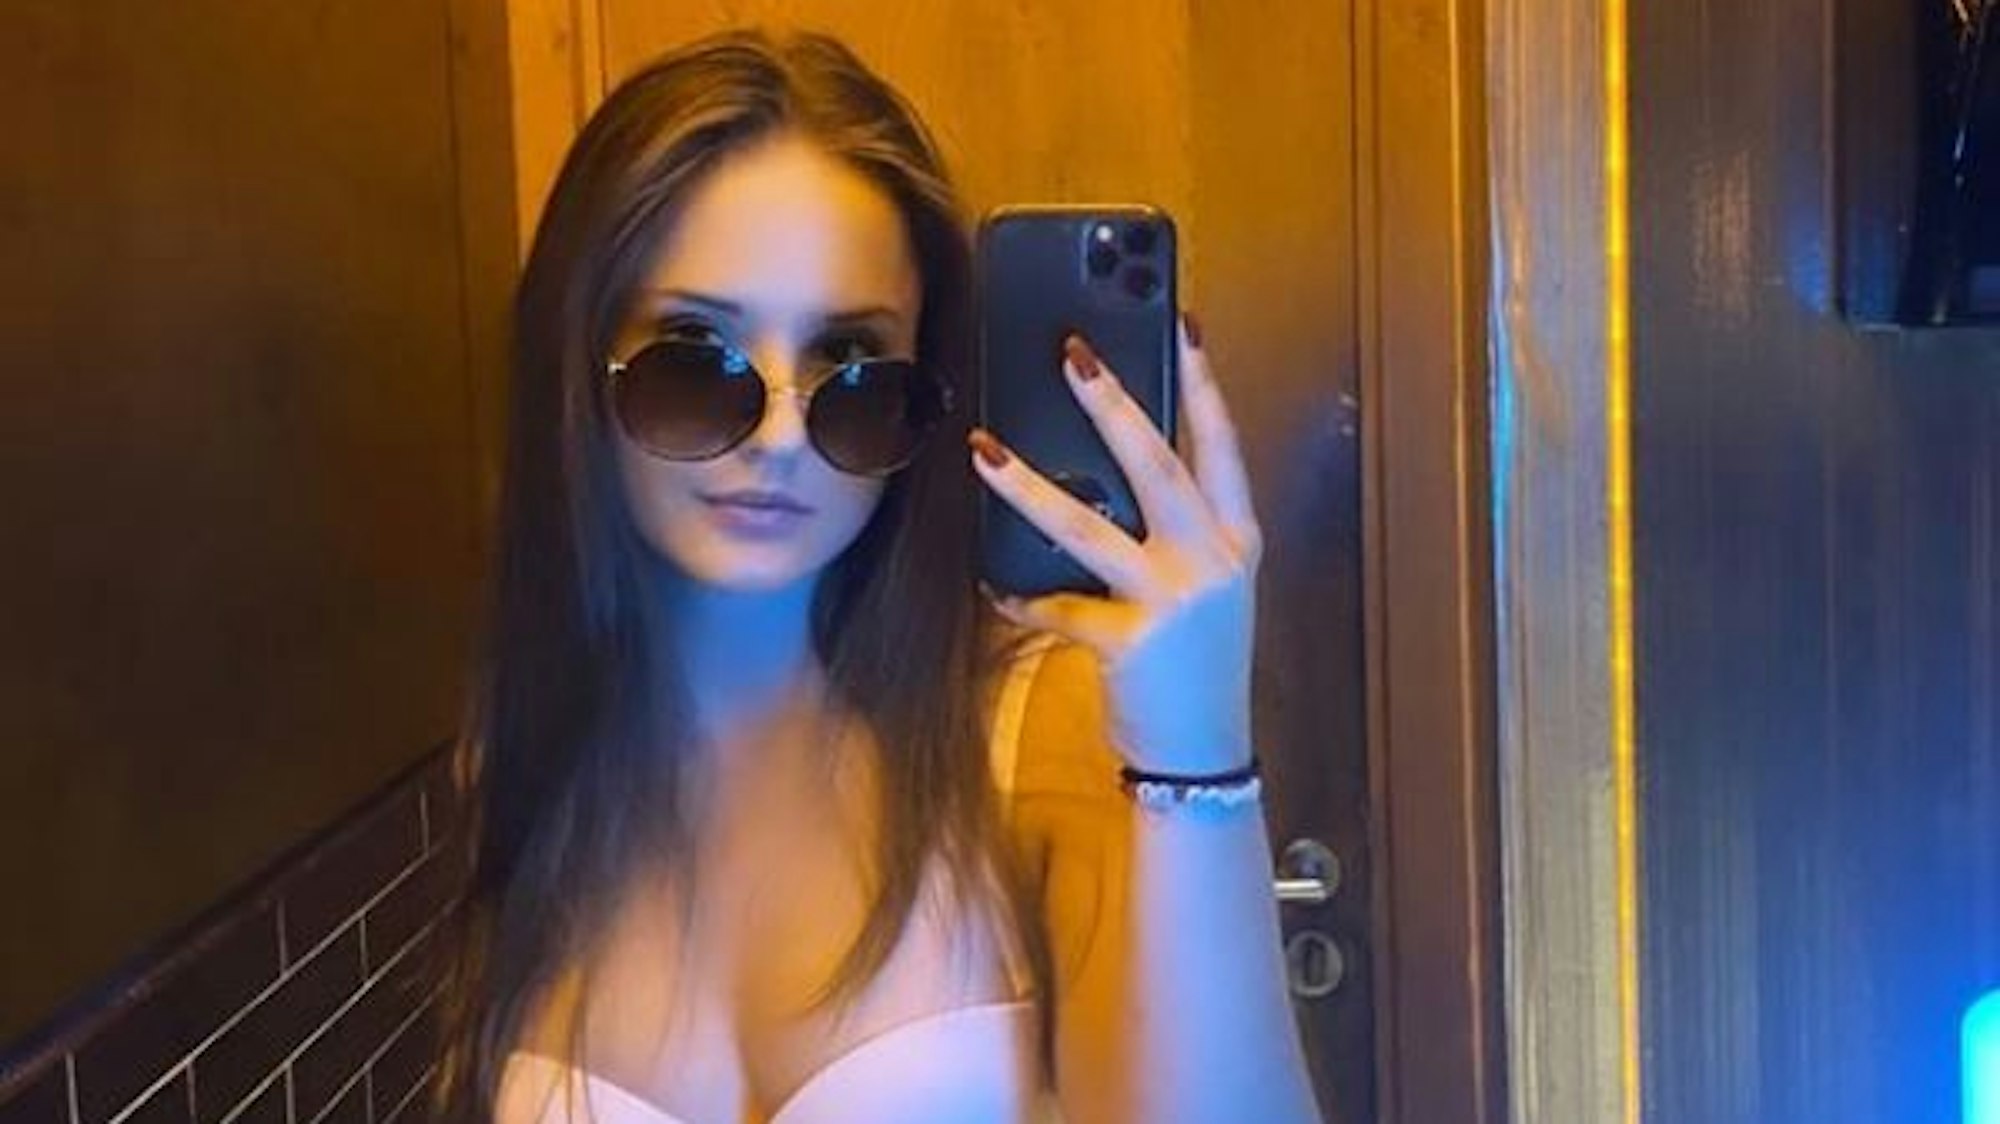 Davina Geiss, Tochter von Robert und Carmen Geiss, zeigt sich am 20. September 2021 auf Instagram mit Sonnenbrille